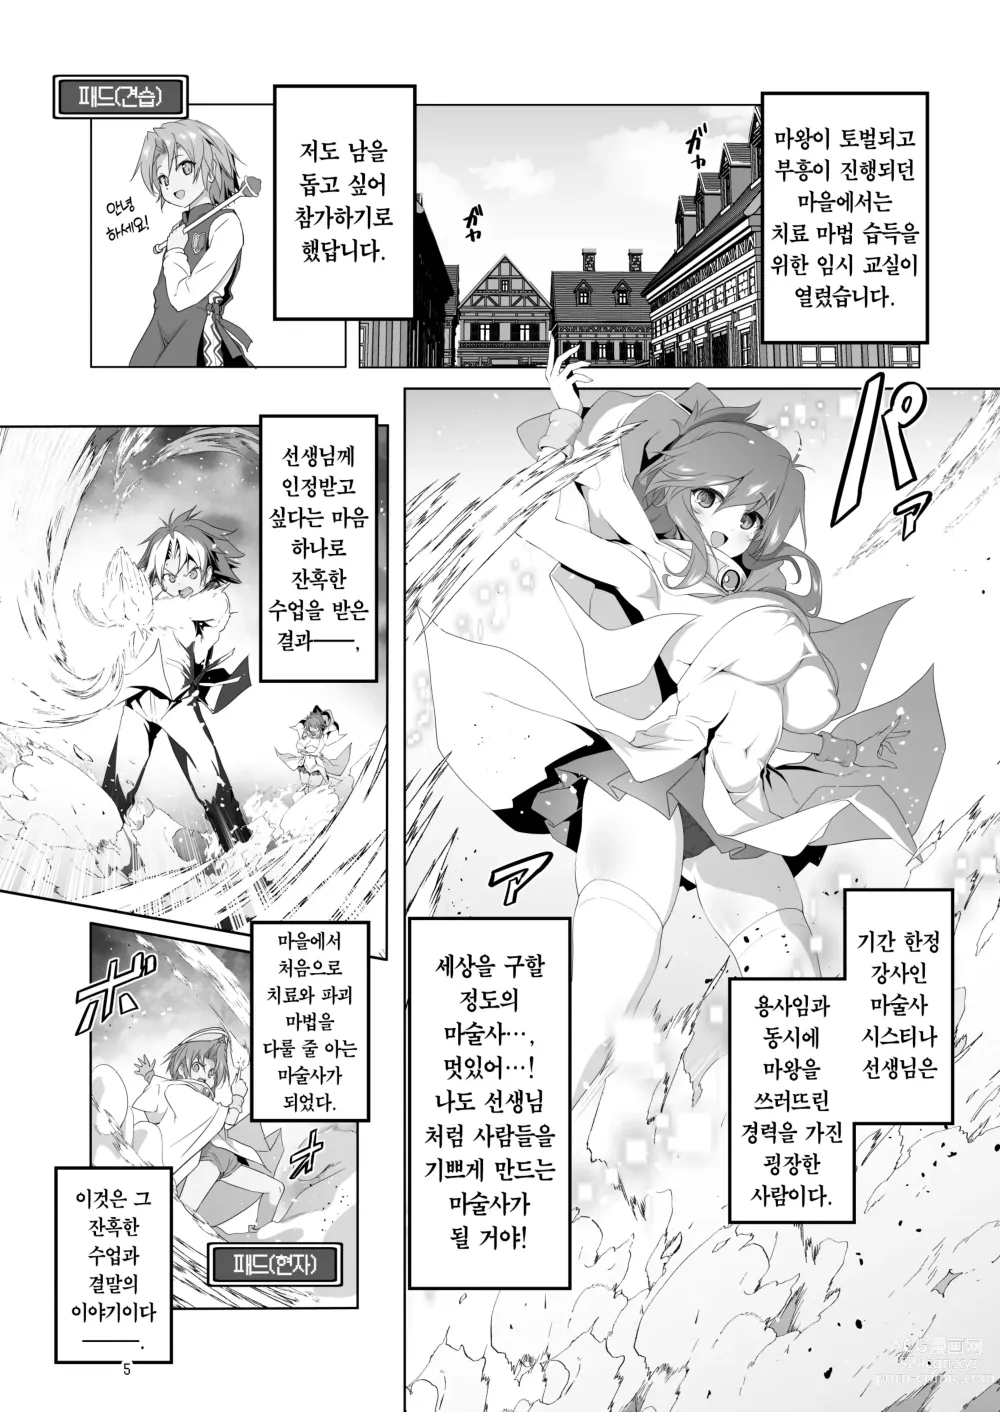 Page 5 of doujinshi 참으로 유감이지만 모험의 서 9는 사라져버렸습니다.